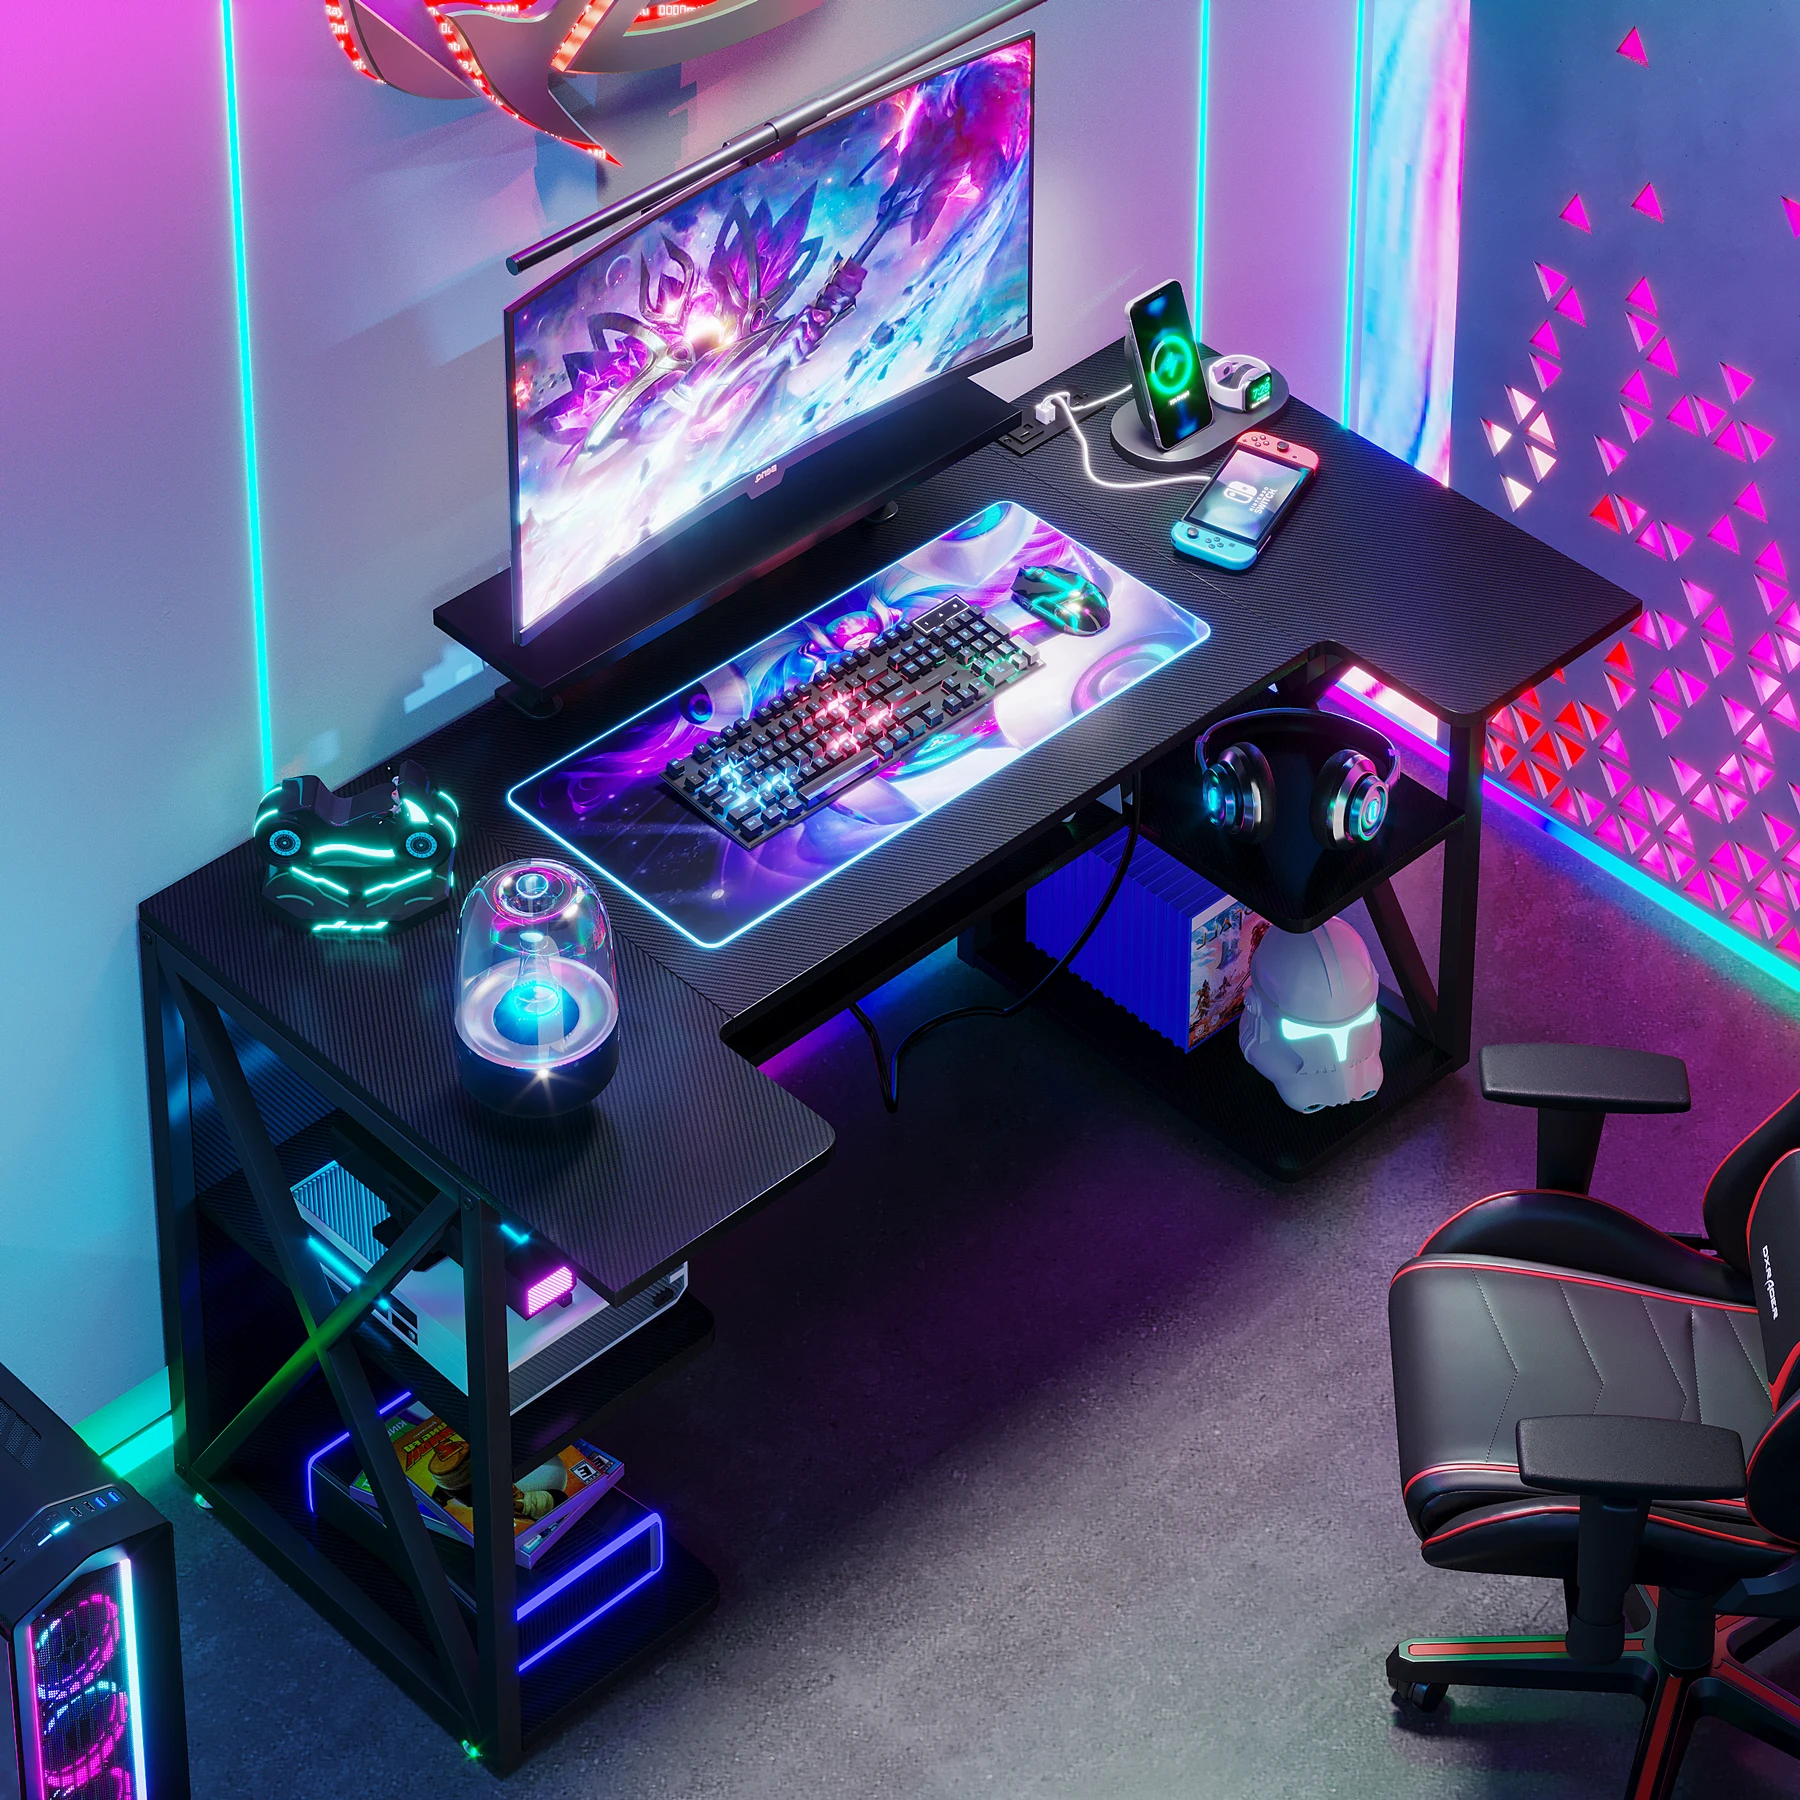 Modern LED Lights Computer PC Gamer Desk Gaming Table For Home Or Internet Cafe